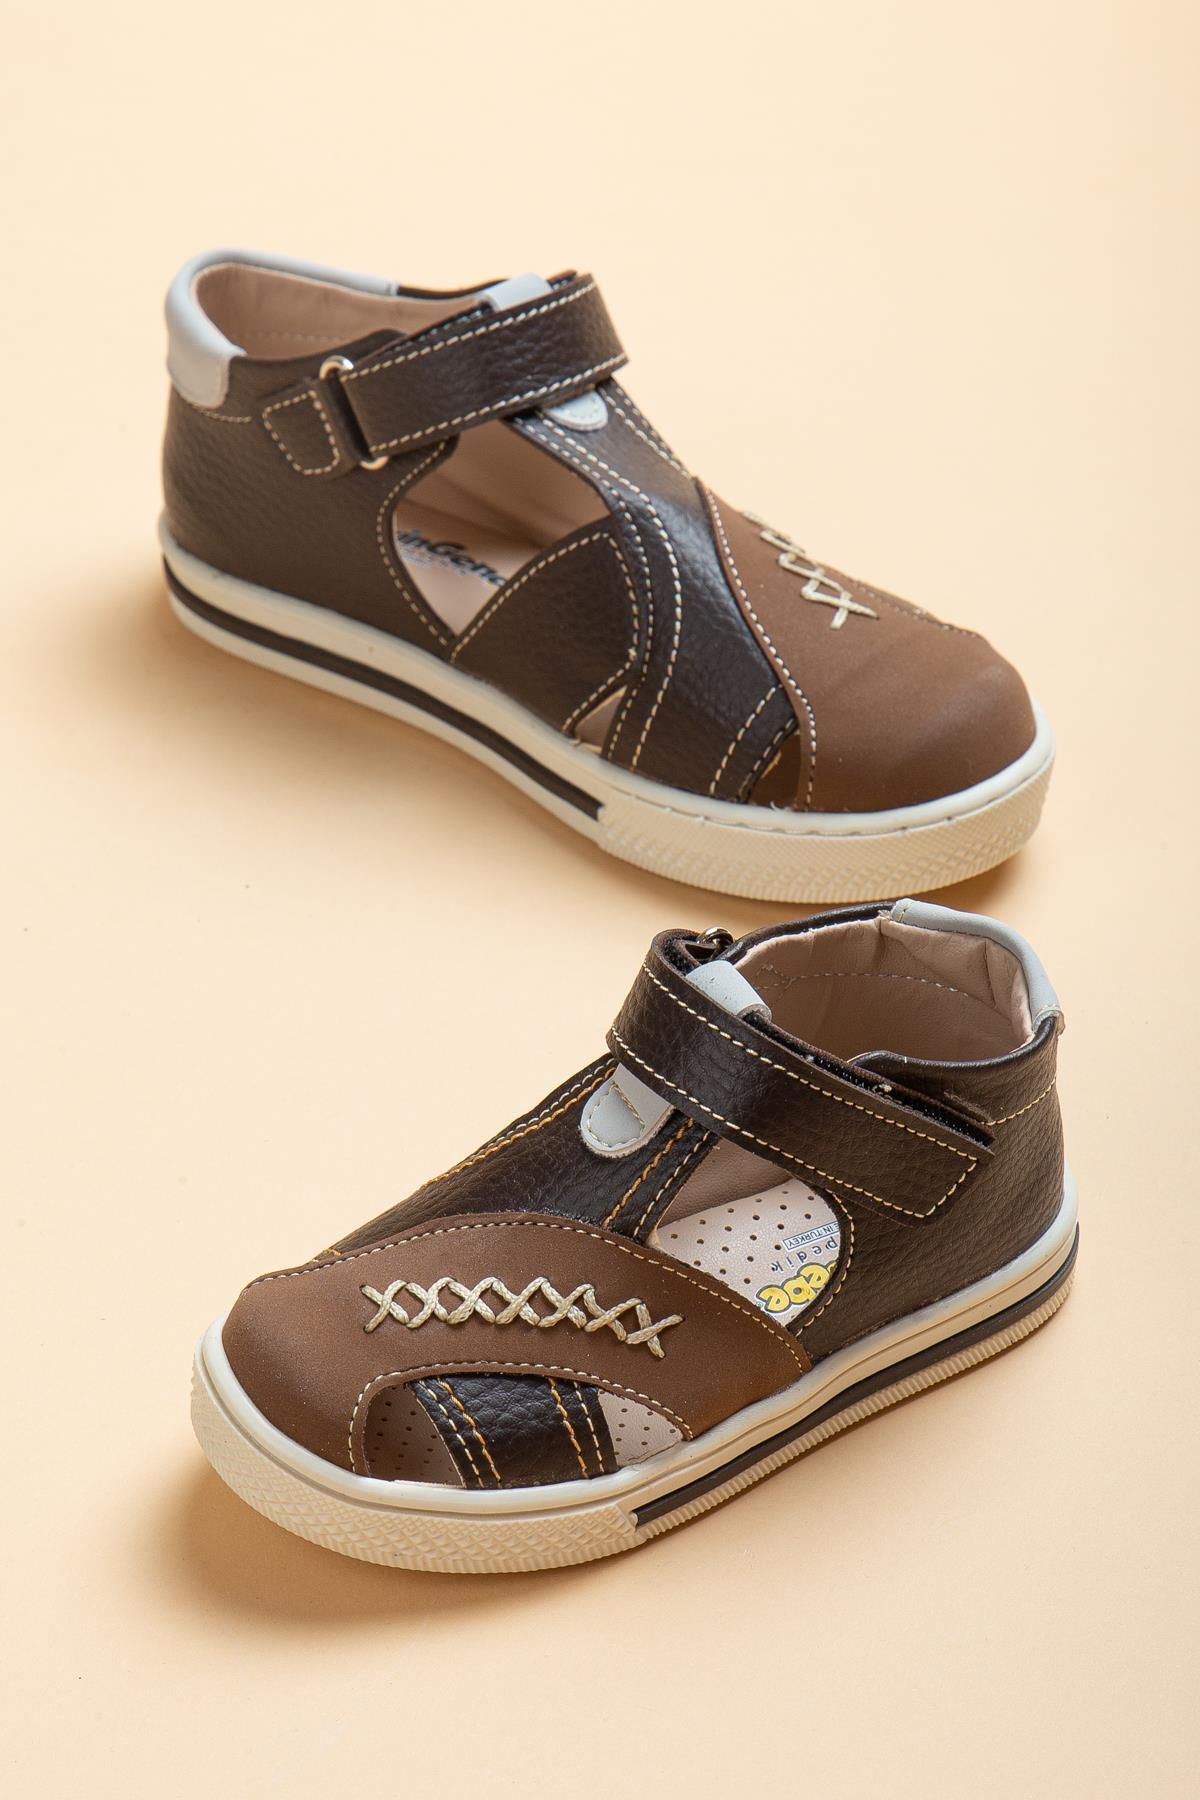 Dilimler Ayakkabı Şirinbebe Şiringenç Saraçlı Model Kahverengi Erkek Ilkadım Bebek Çocuk Ayakkabı Sandalet